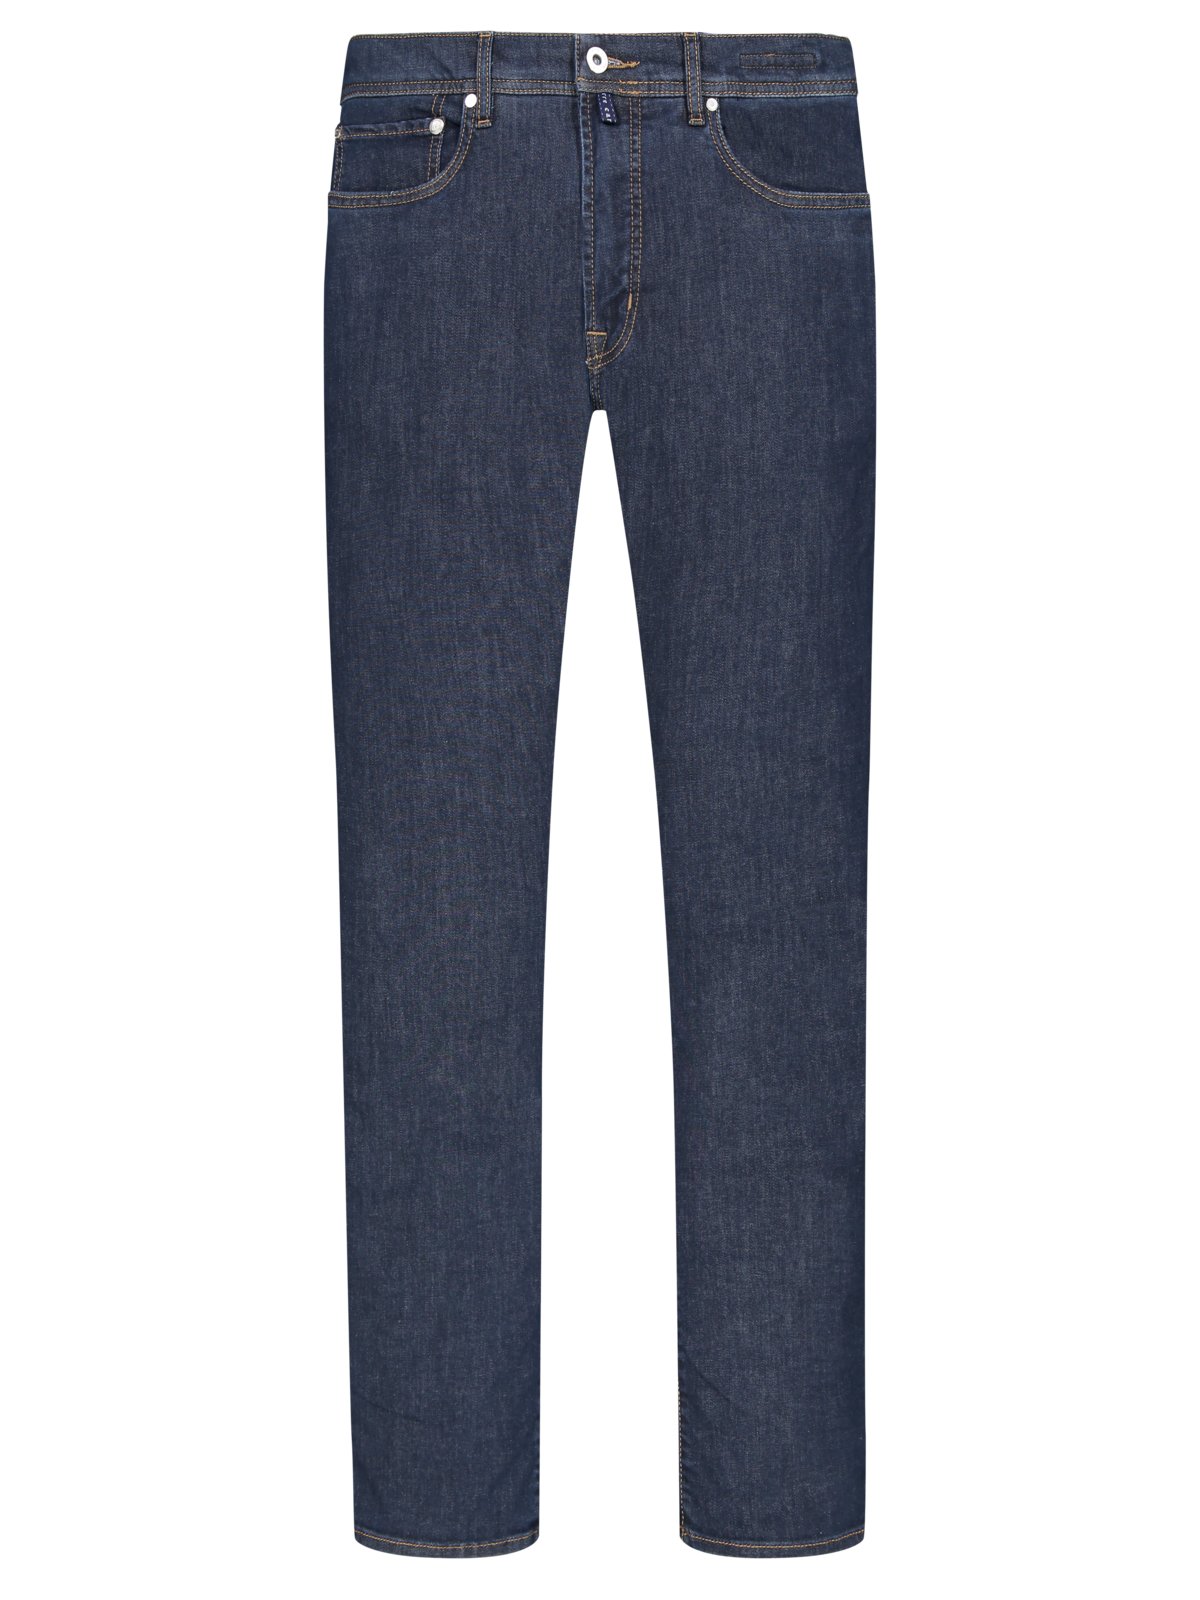 Pierre Cardin 5-Pocket Jeans Voyage mit Stretchanteil